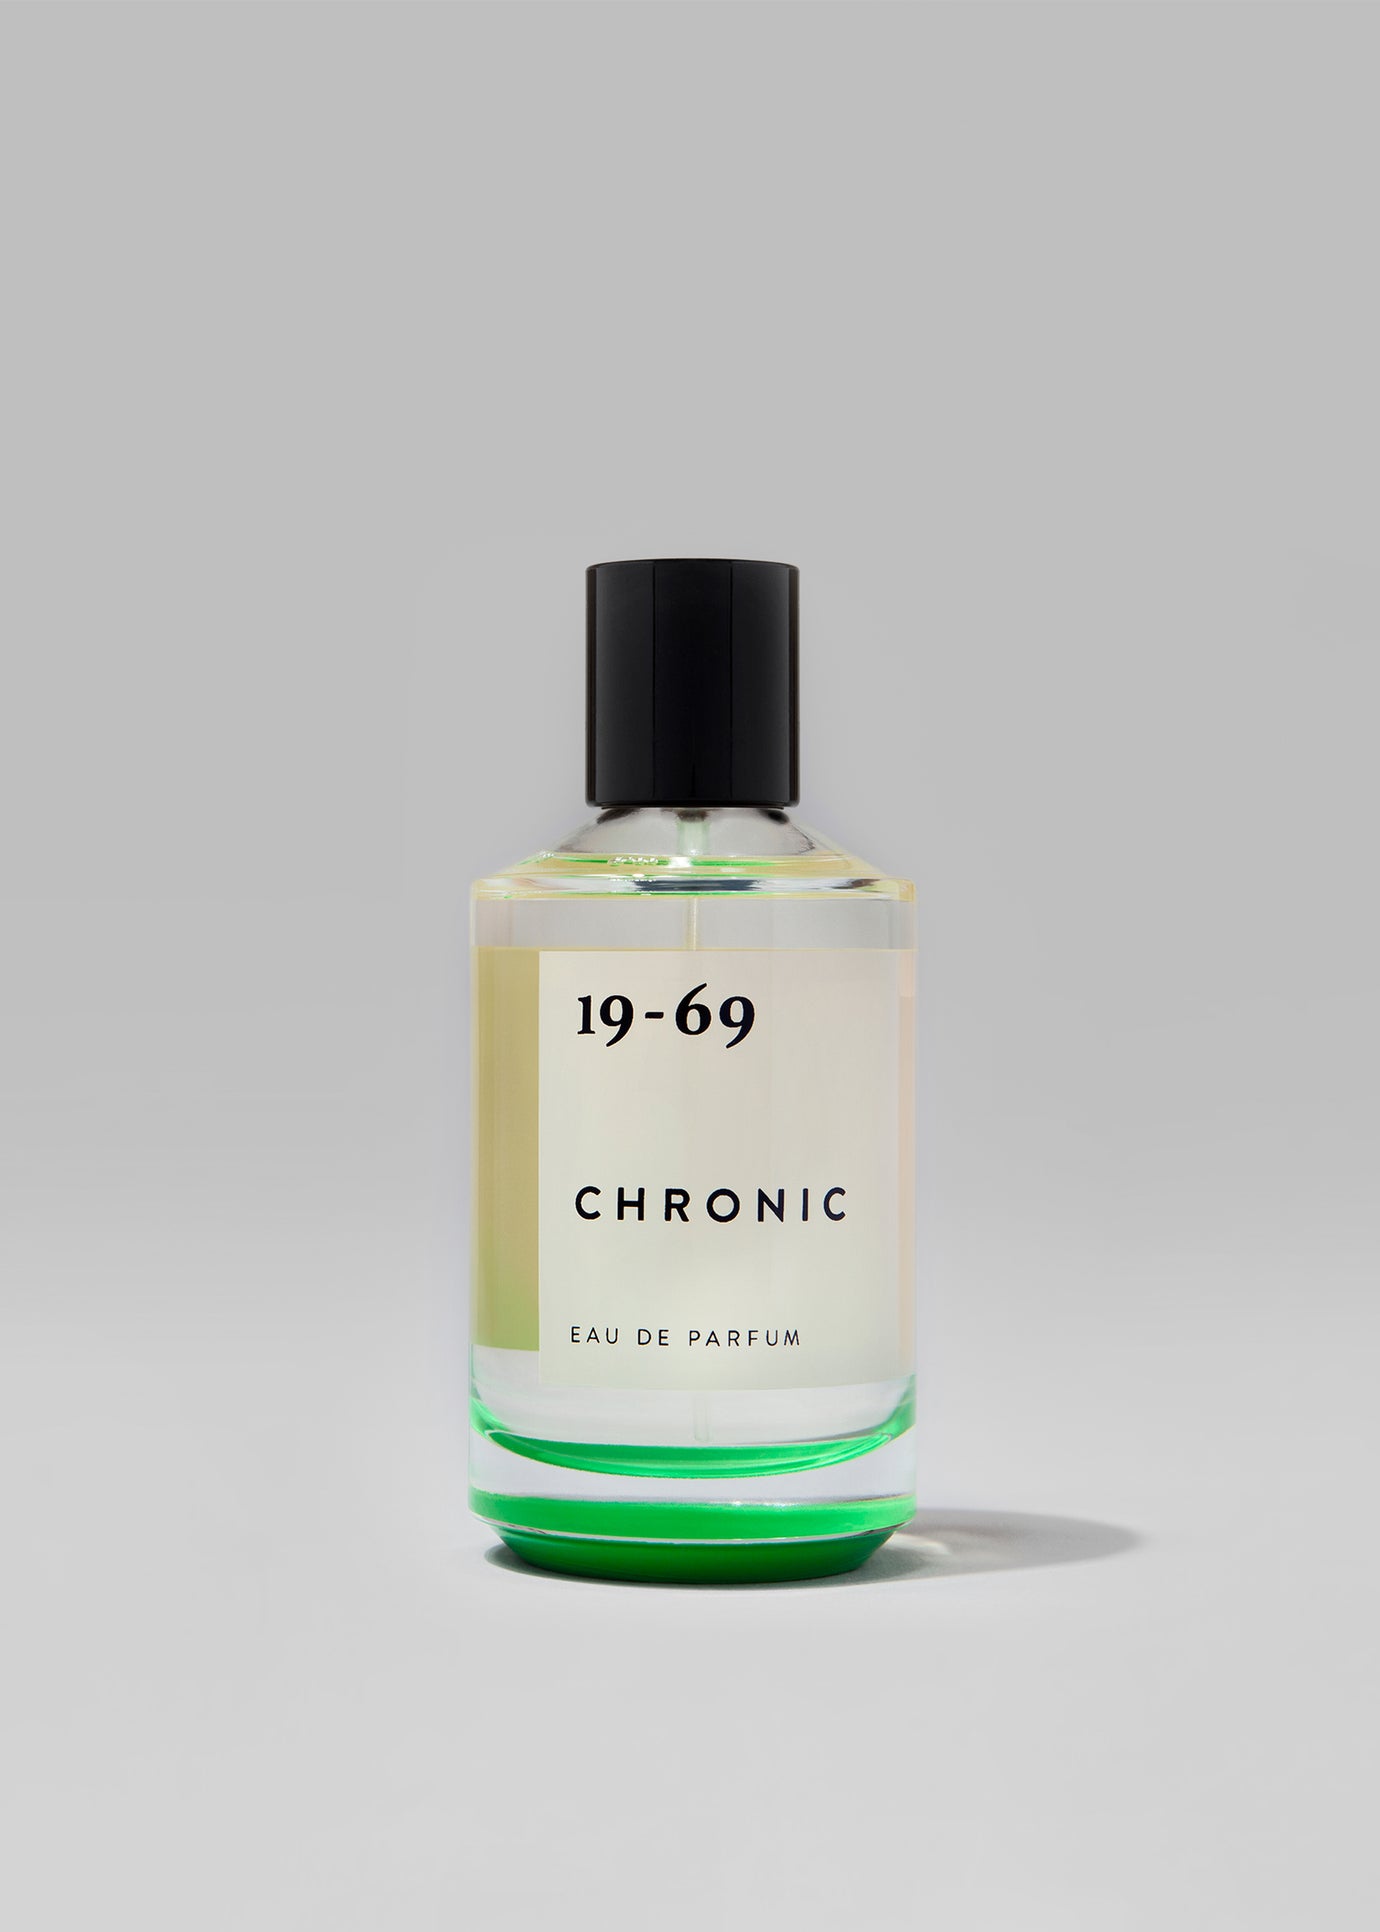 19-69 Chronic Eau de Parfum